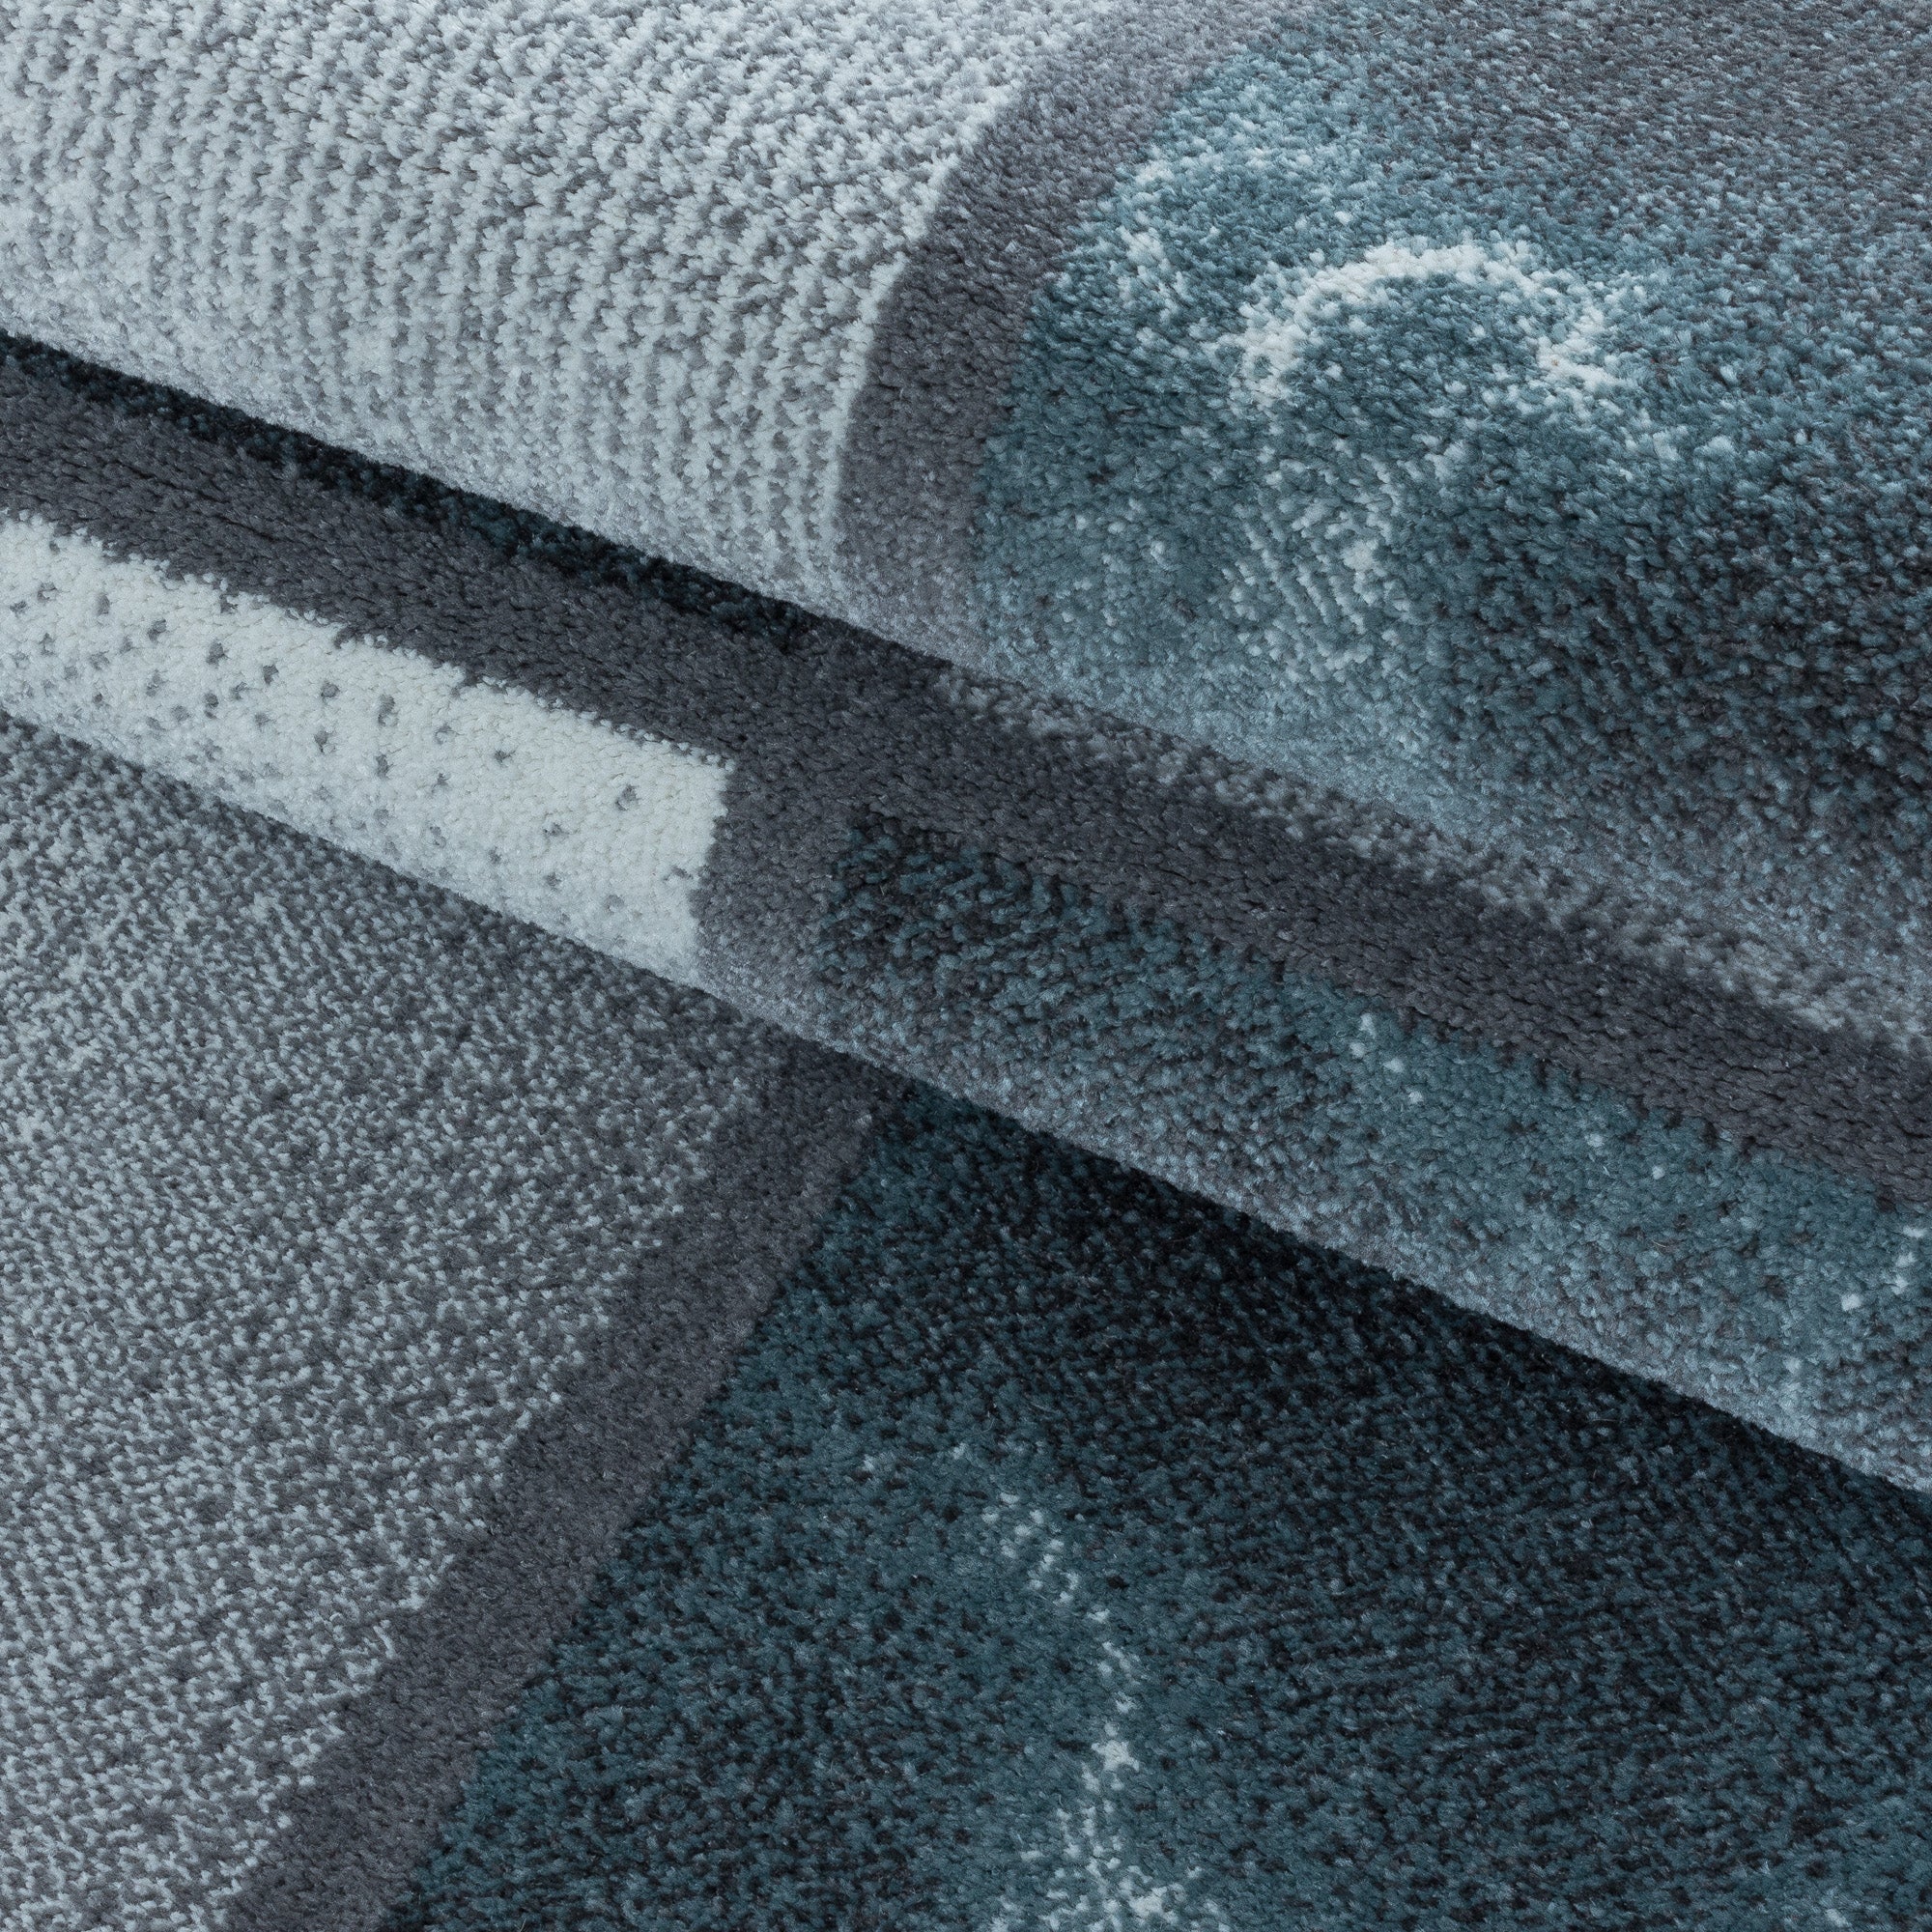 Kurzflor Teppich Blau Grau Quadrat Muster Marmoriert Wohnzimmerteppich Weich